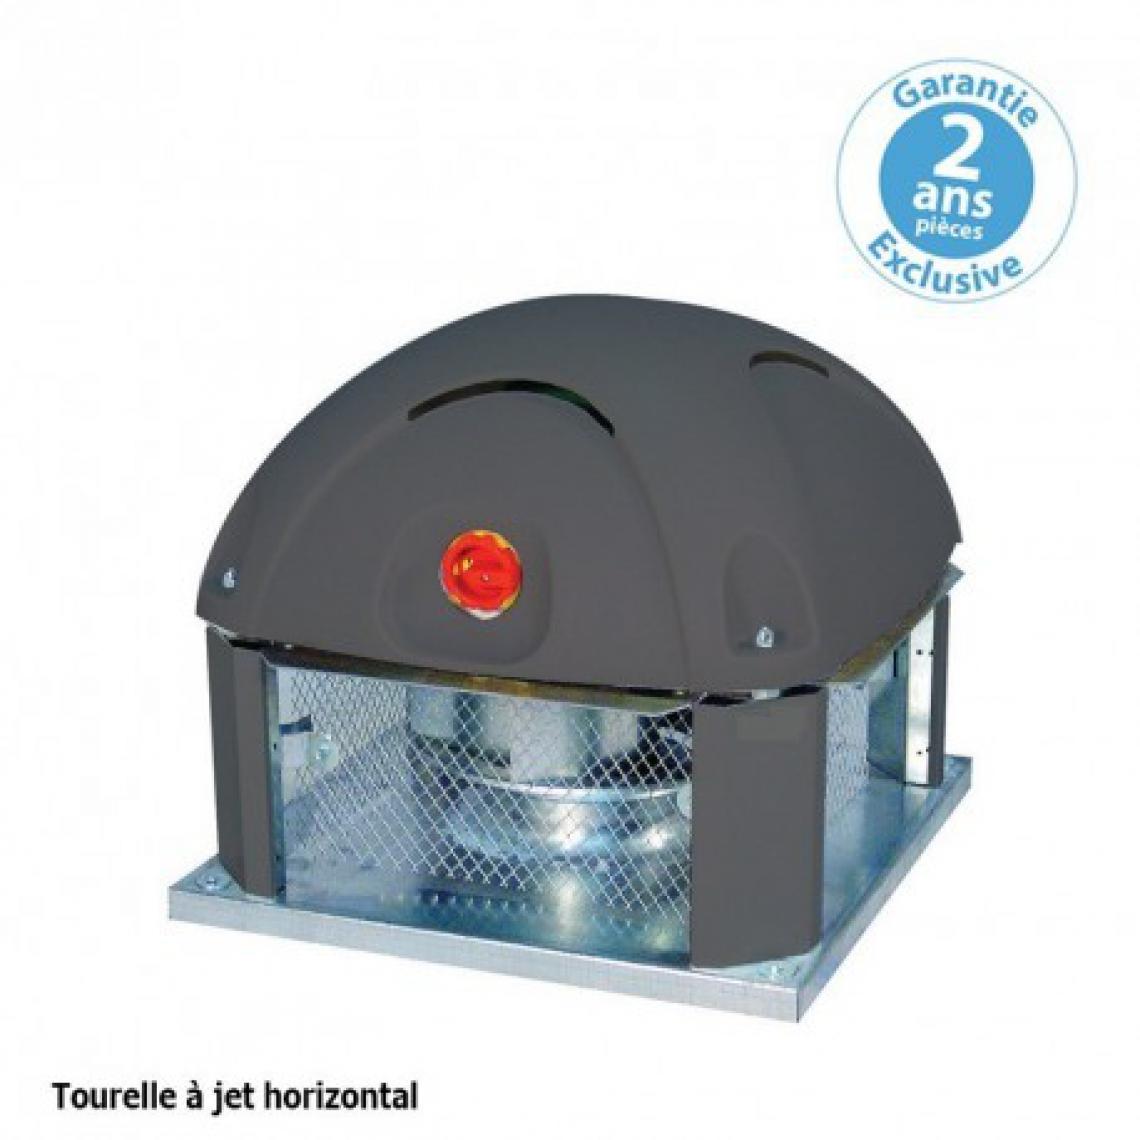 Furnotel - Tourelle 1 vitesse - triphasée - refoulement horizontal - 4500 m³ / h sous 260 Pa - - VMC, Ventilation